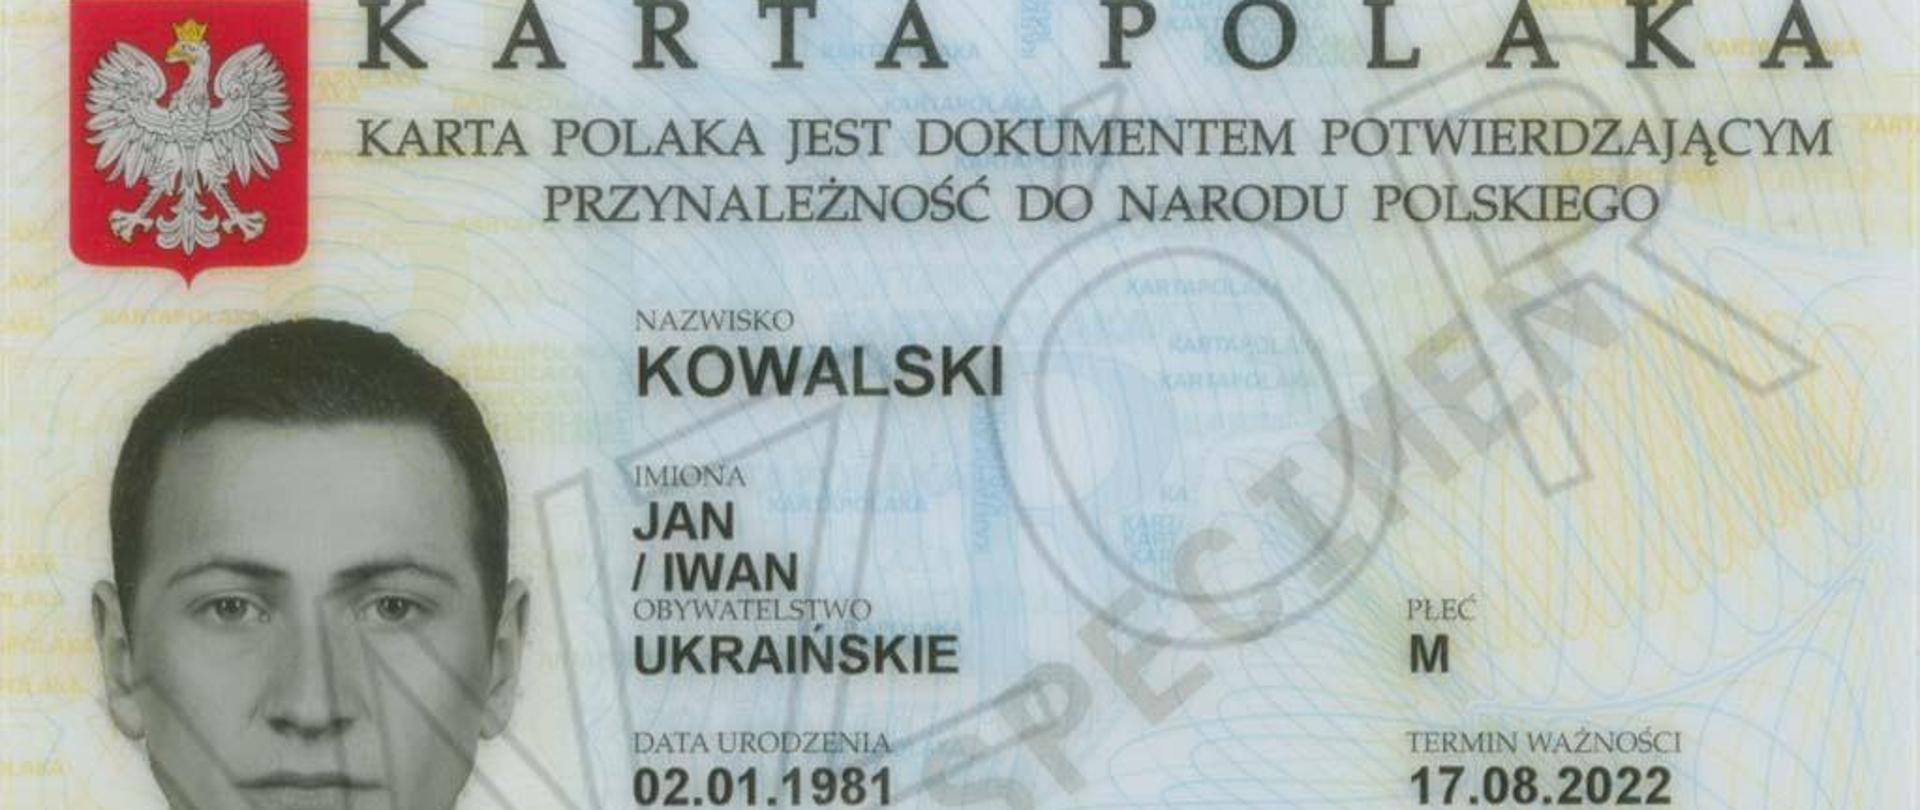 Karta Polaka po spełnieniu kryteriów formalnych przysługuje osobom, które czują się Polakami, choć mieszkają poza granicami kraju